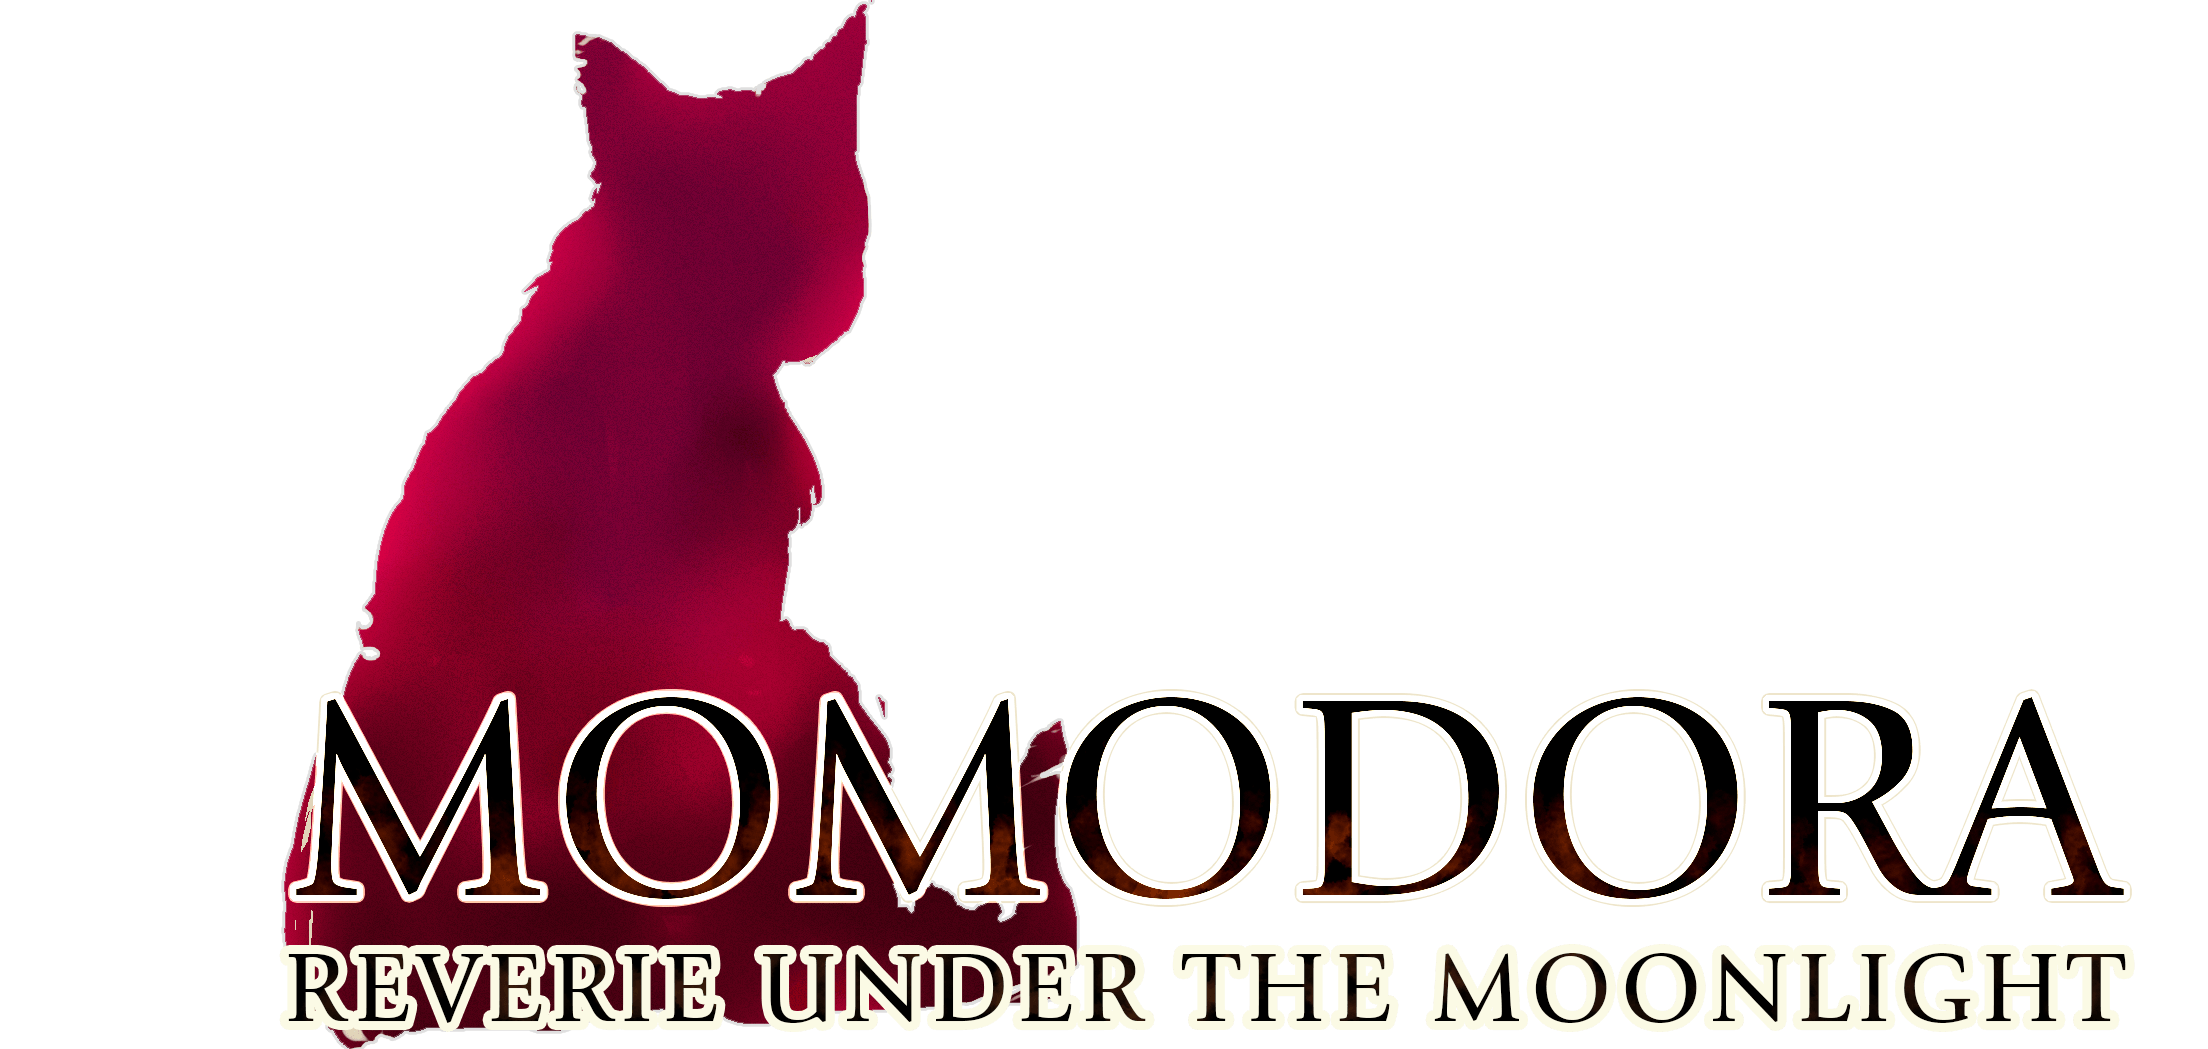 Momodora IV